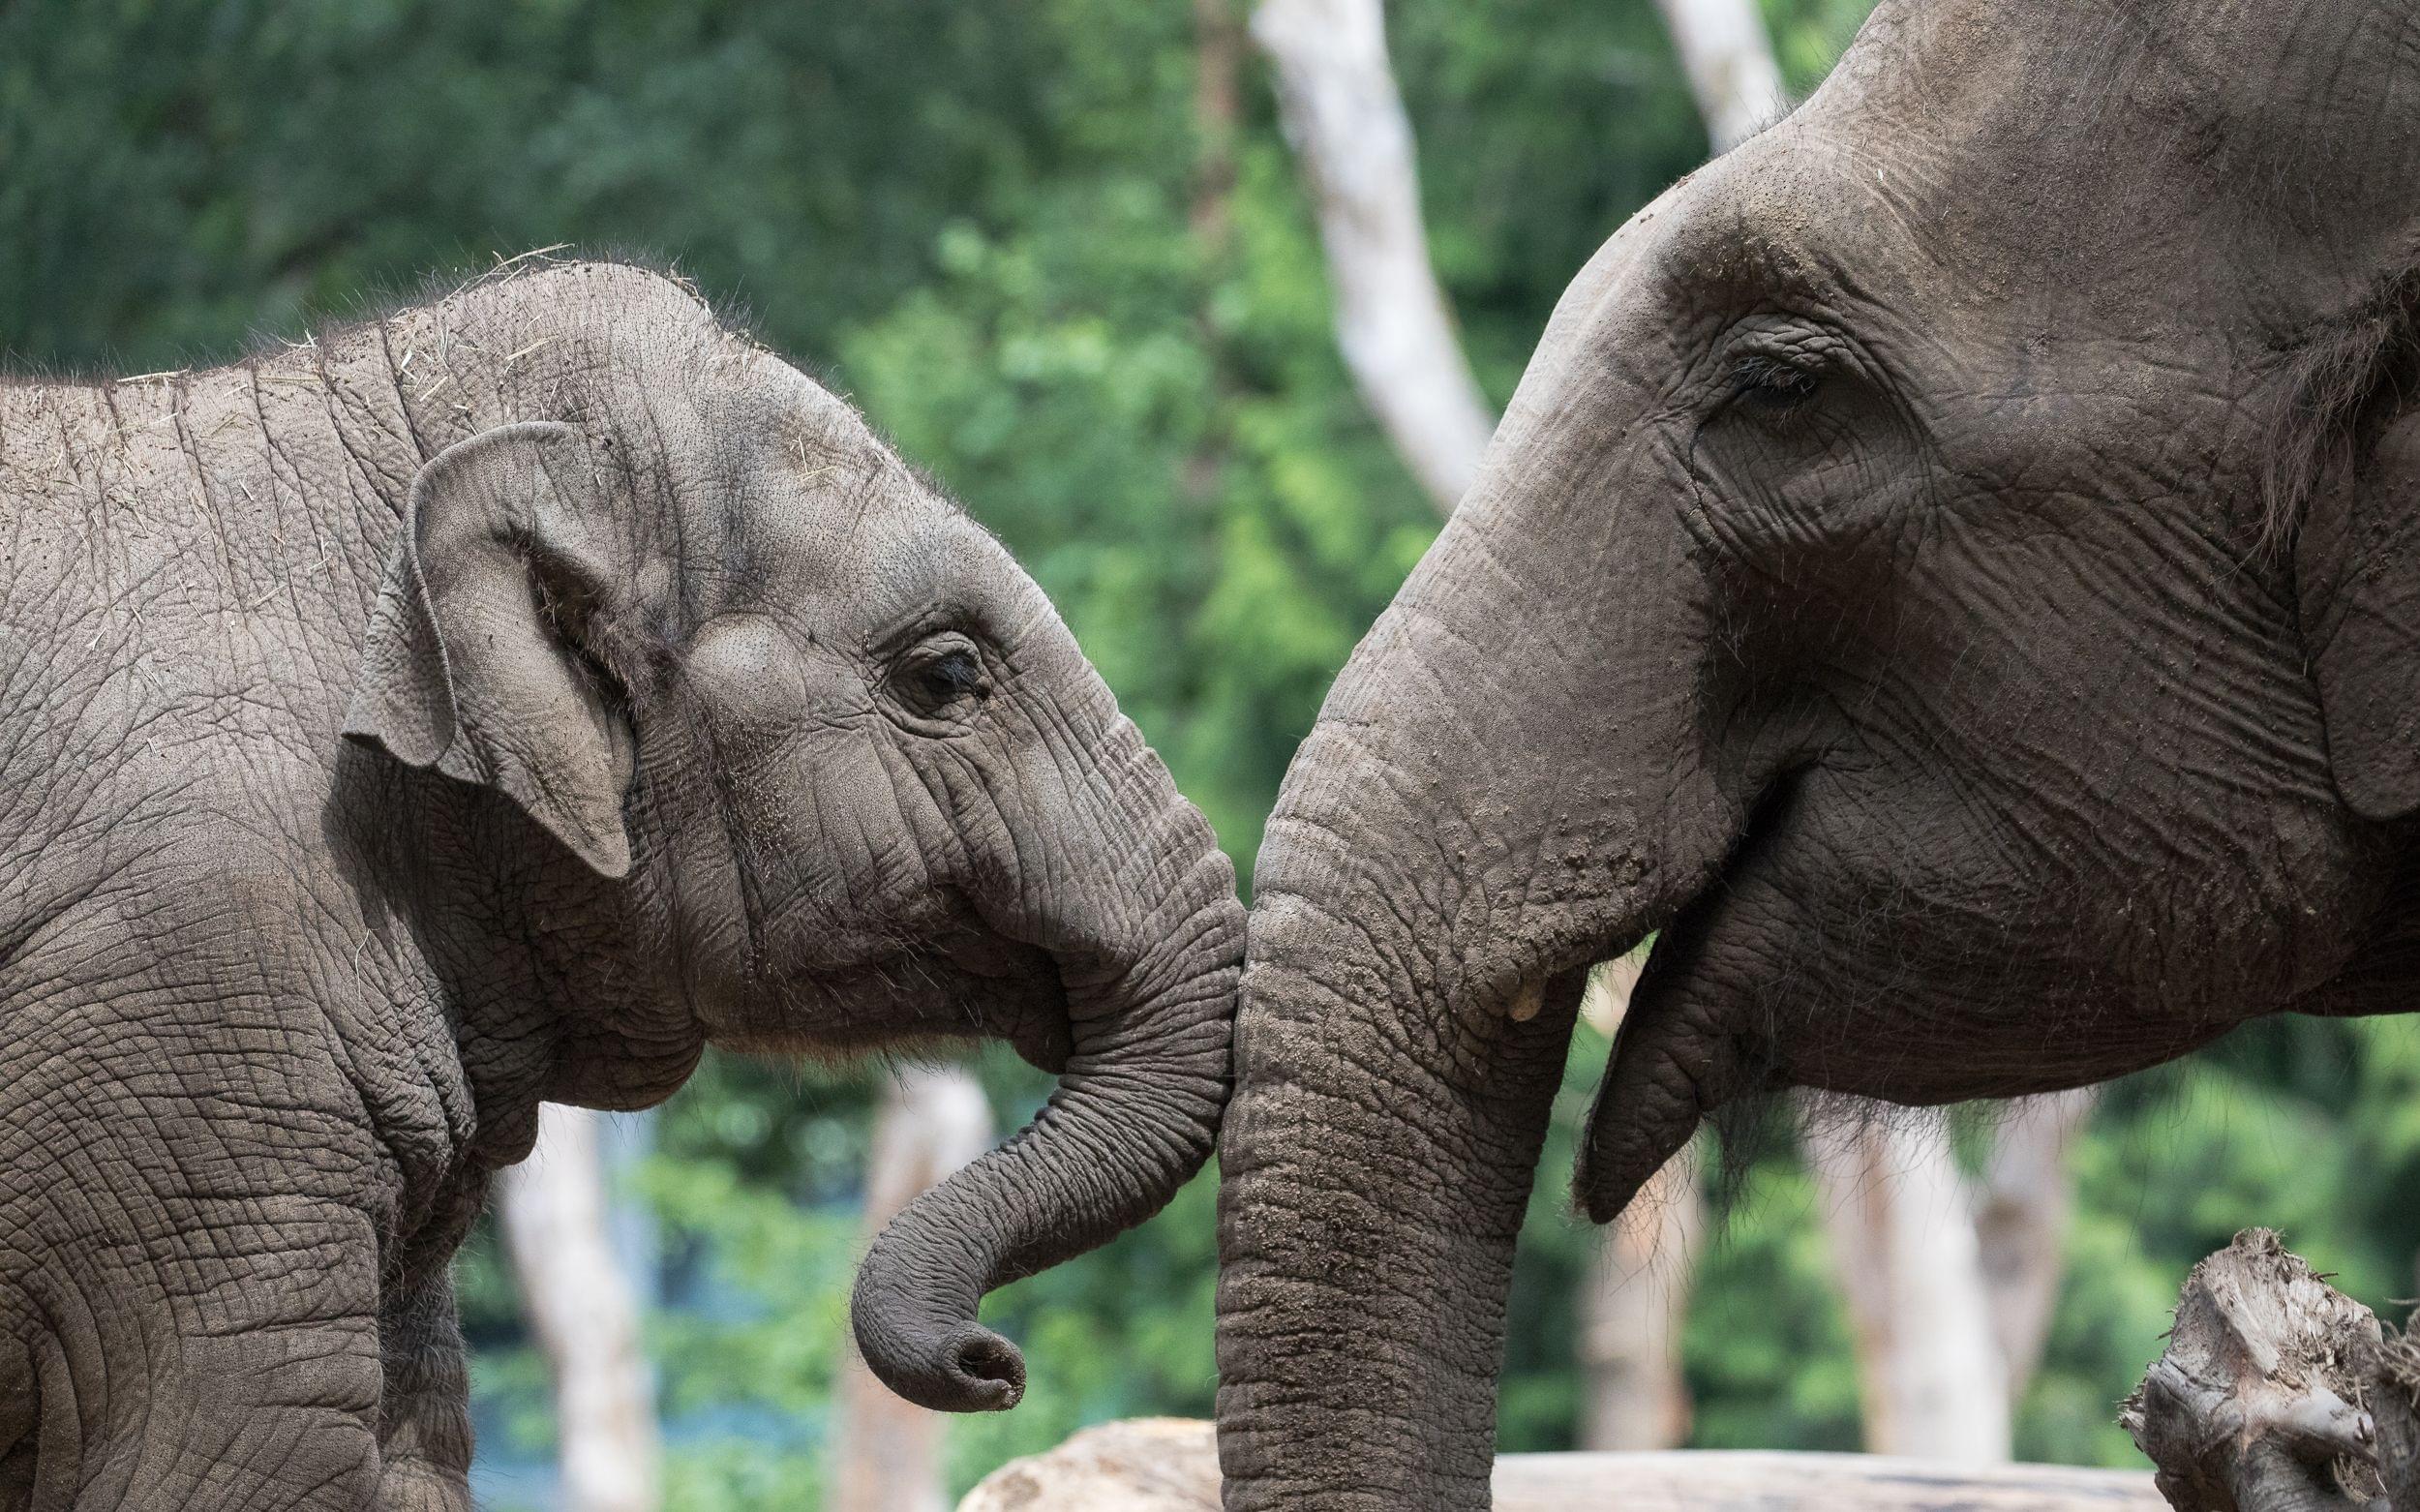 Elephants in Asian Zoos